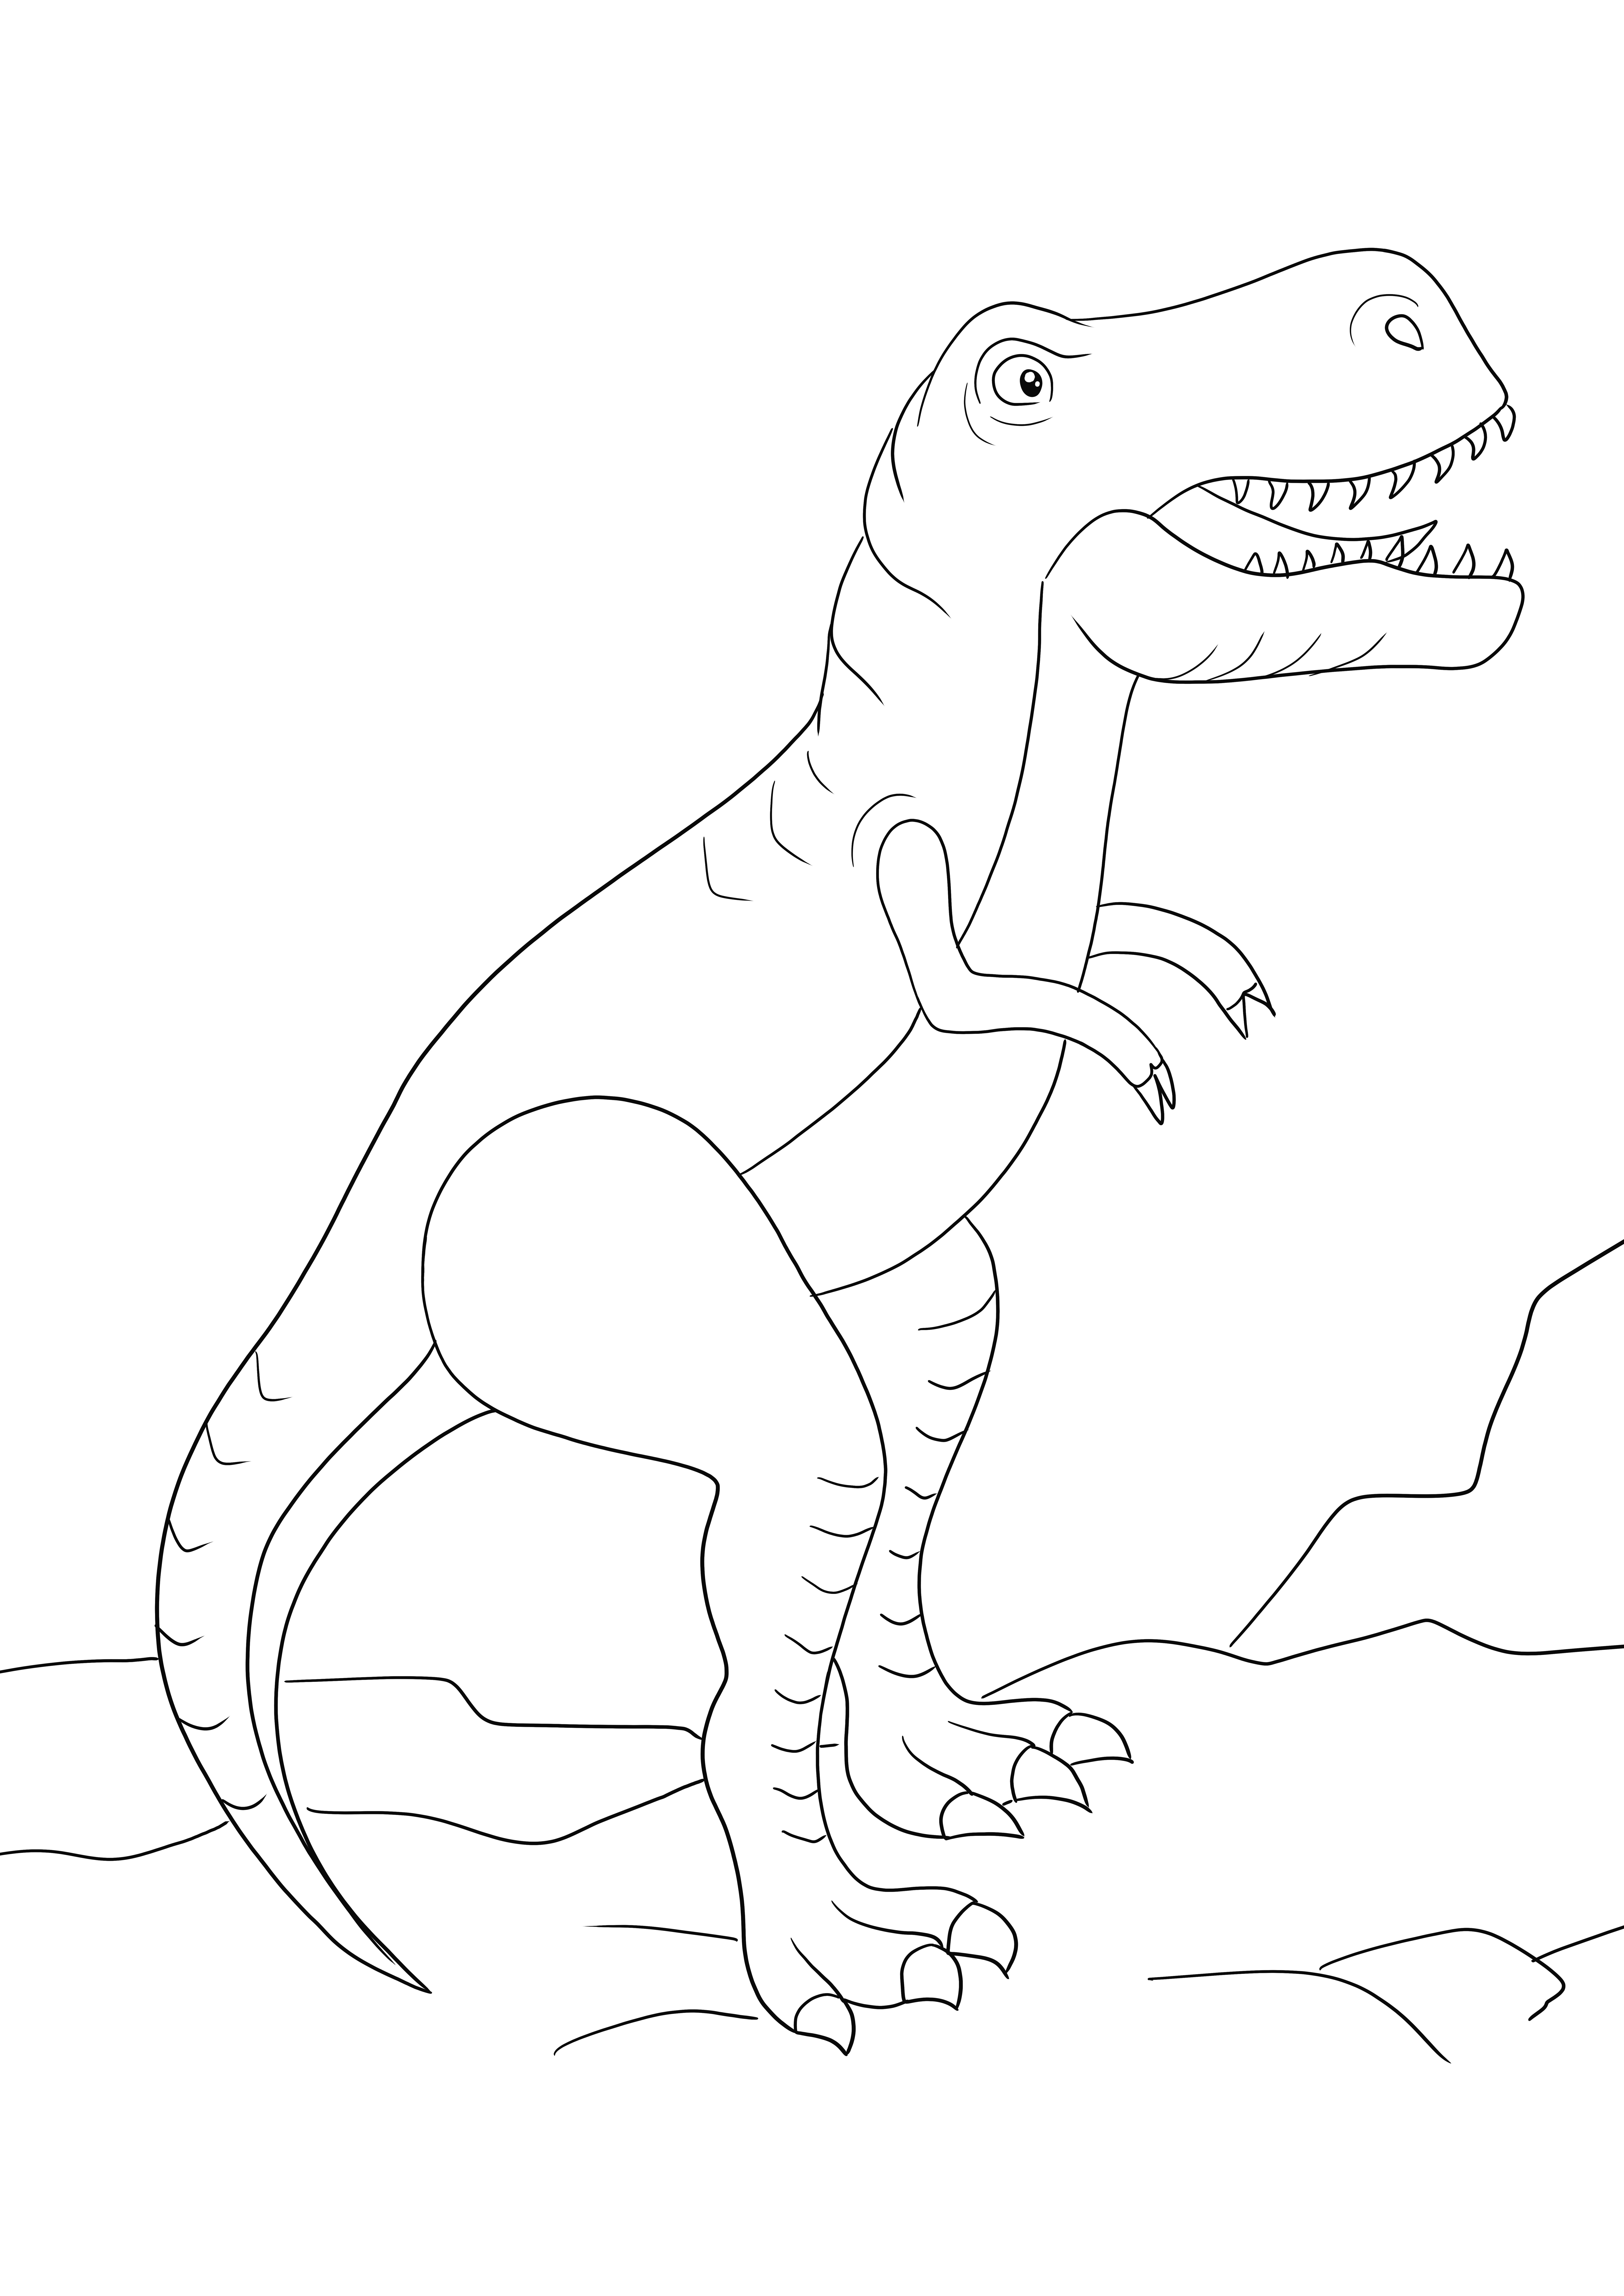 Een gratis te downloaden kleurplaat van een grote T-Rex en ingekleurd kleurplaat